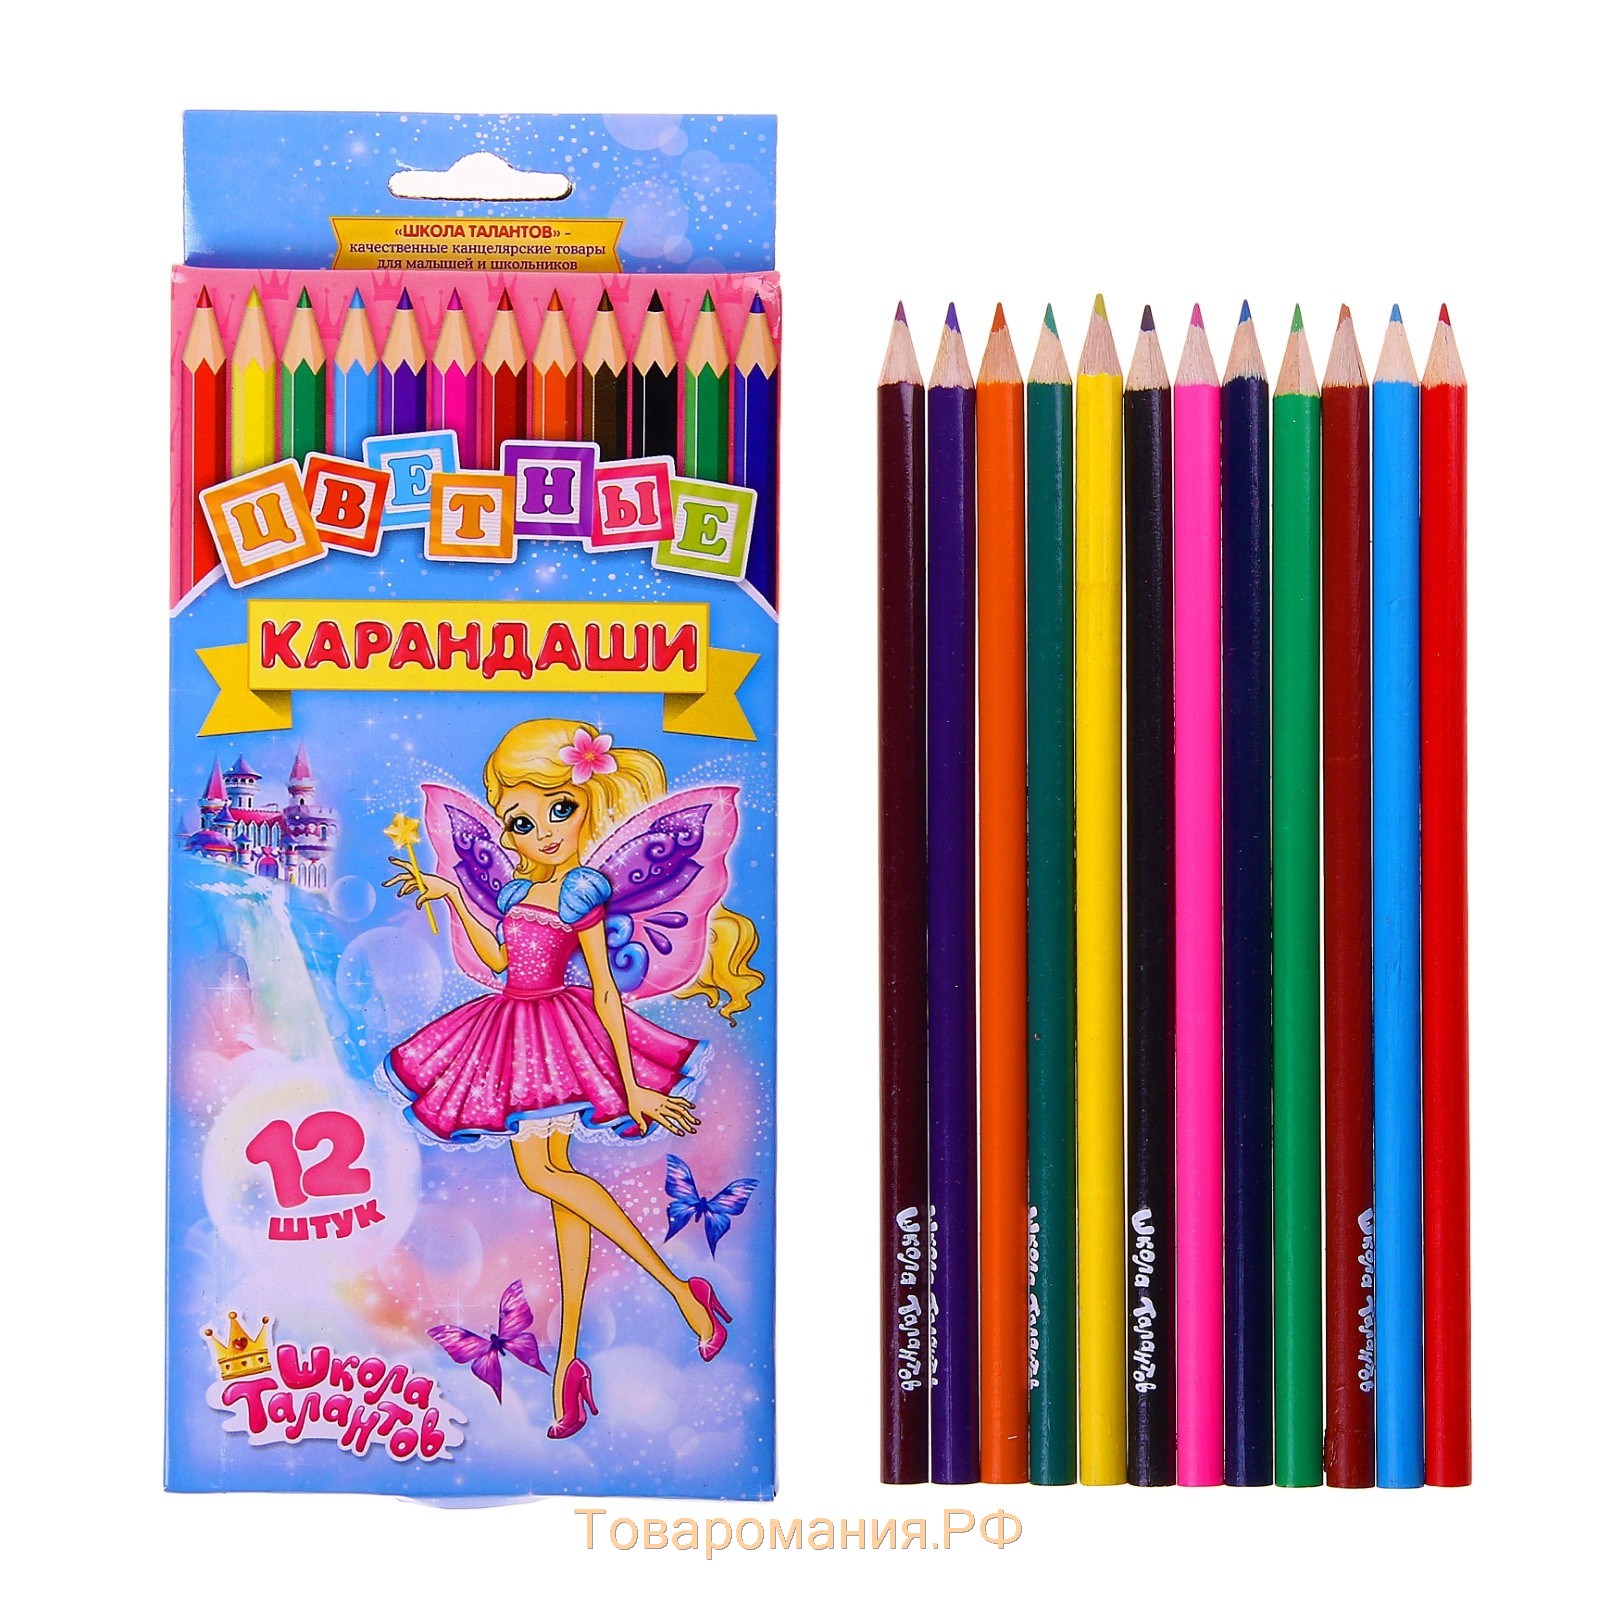 Ten pencils. Цветные карандаши для девочек. Коробка цветных карандашей. Карандаши цветные, 10 цветов. Цветные карандаши в коробке.